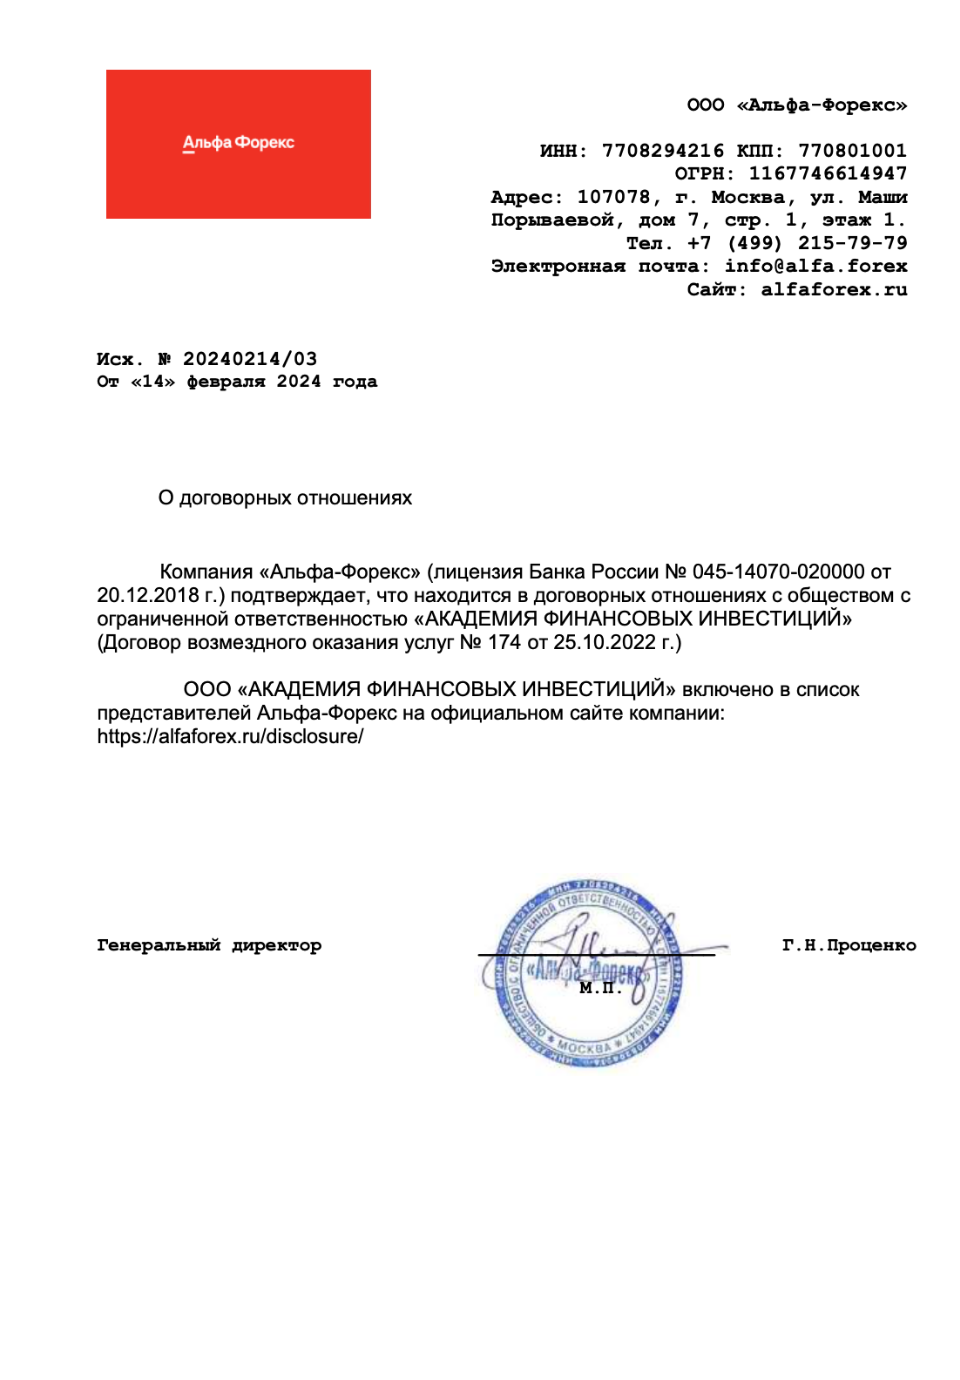 Представитель профессиональных участников рынка ценных бумаг с лицензией от Центрального банка России